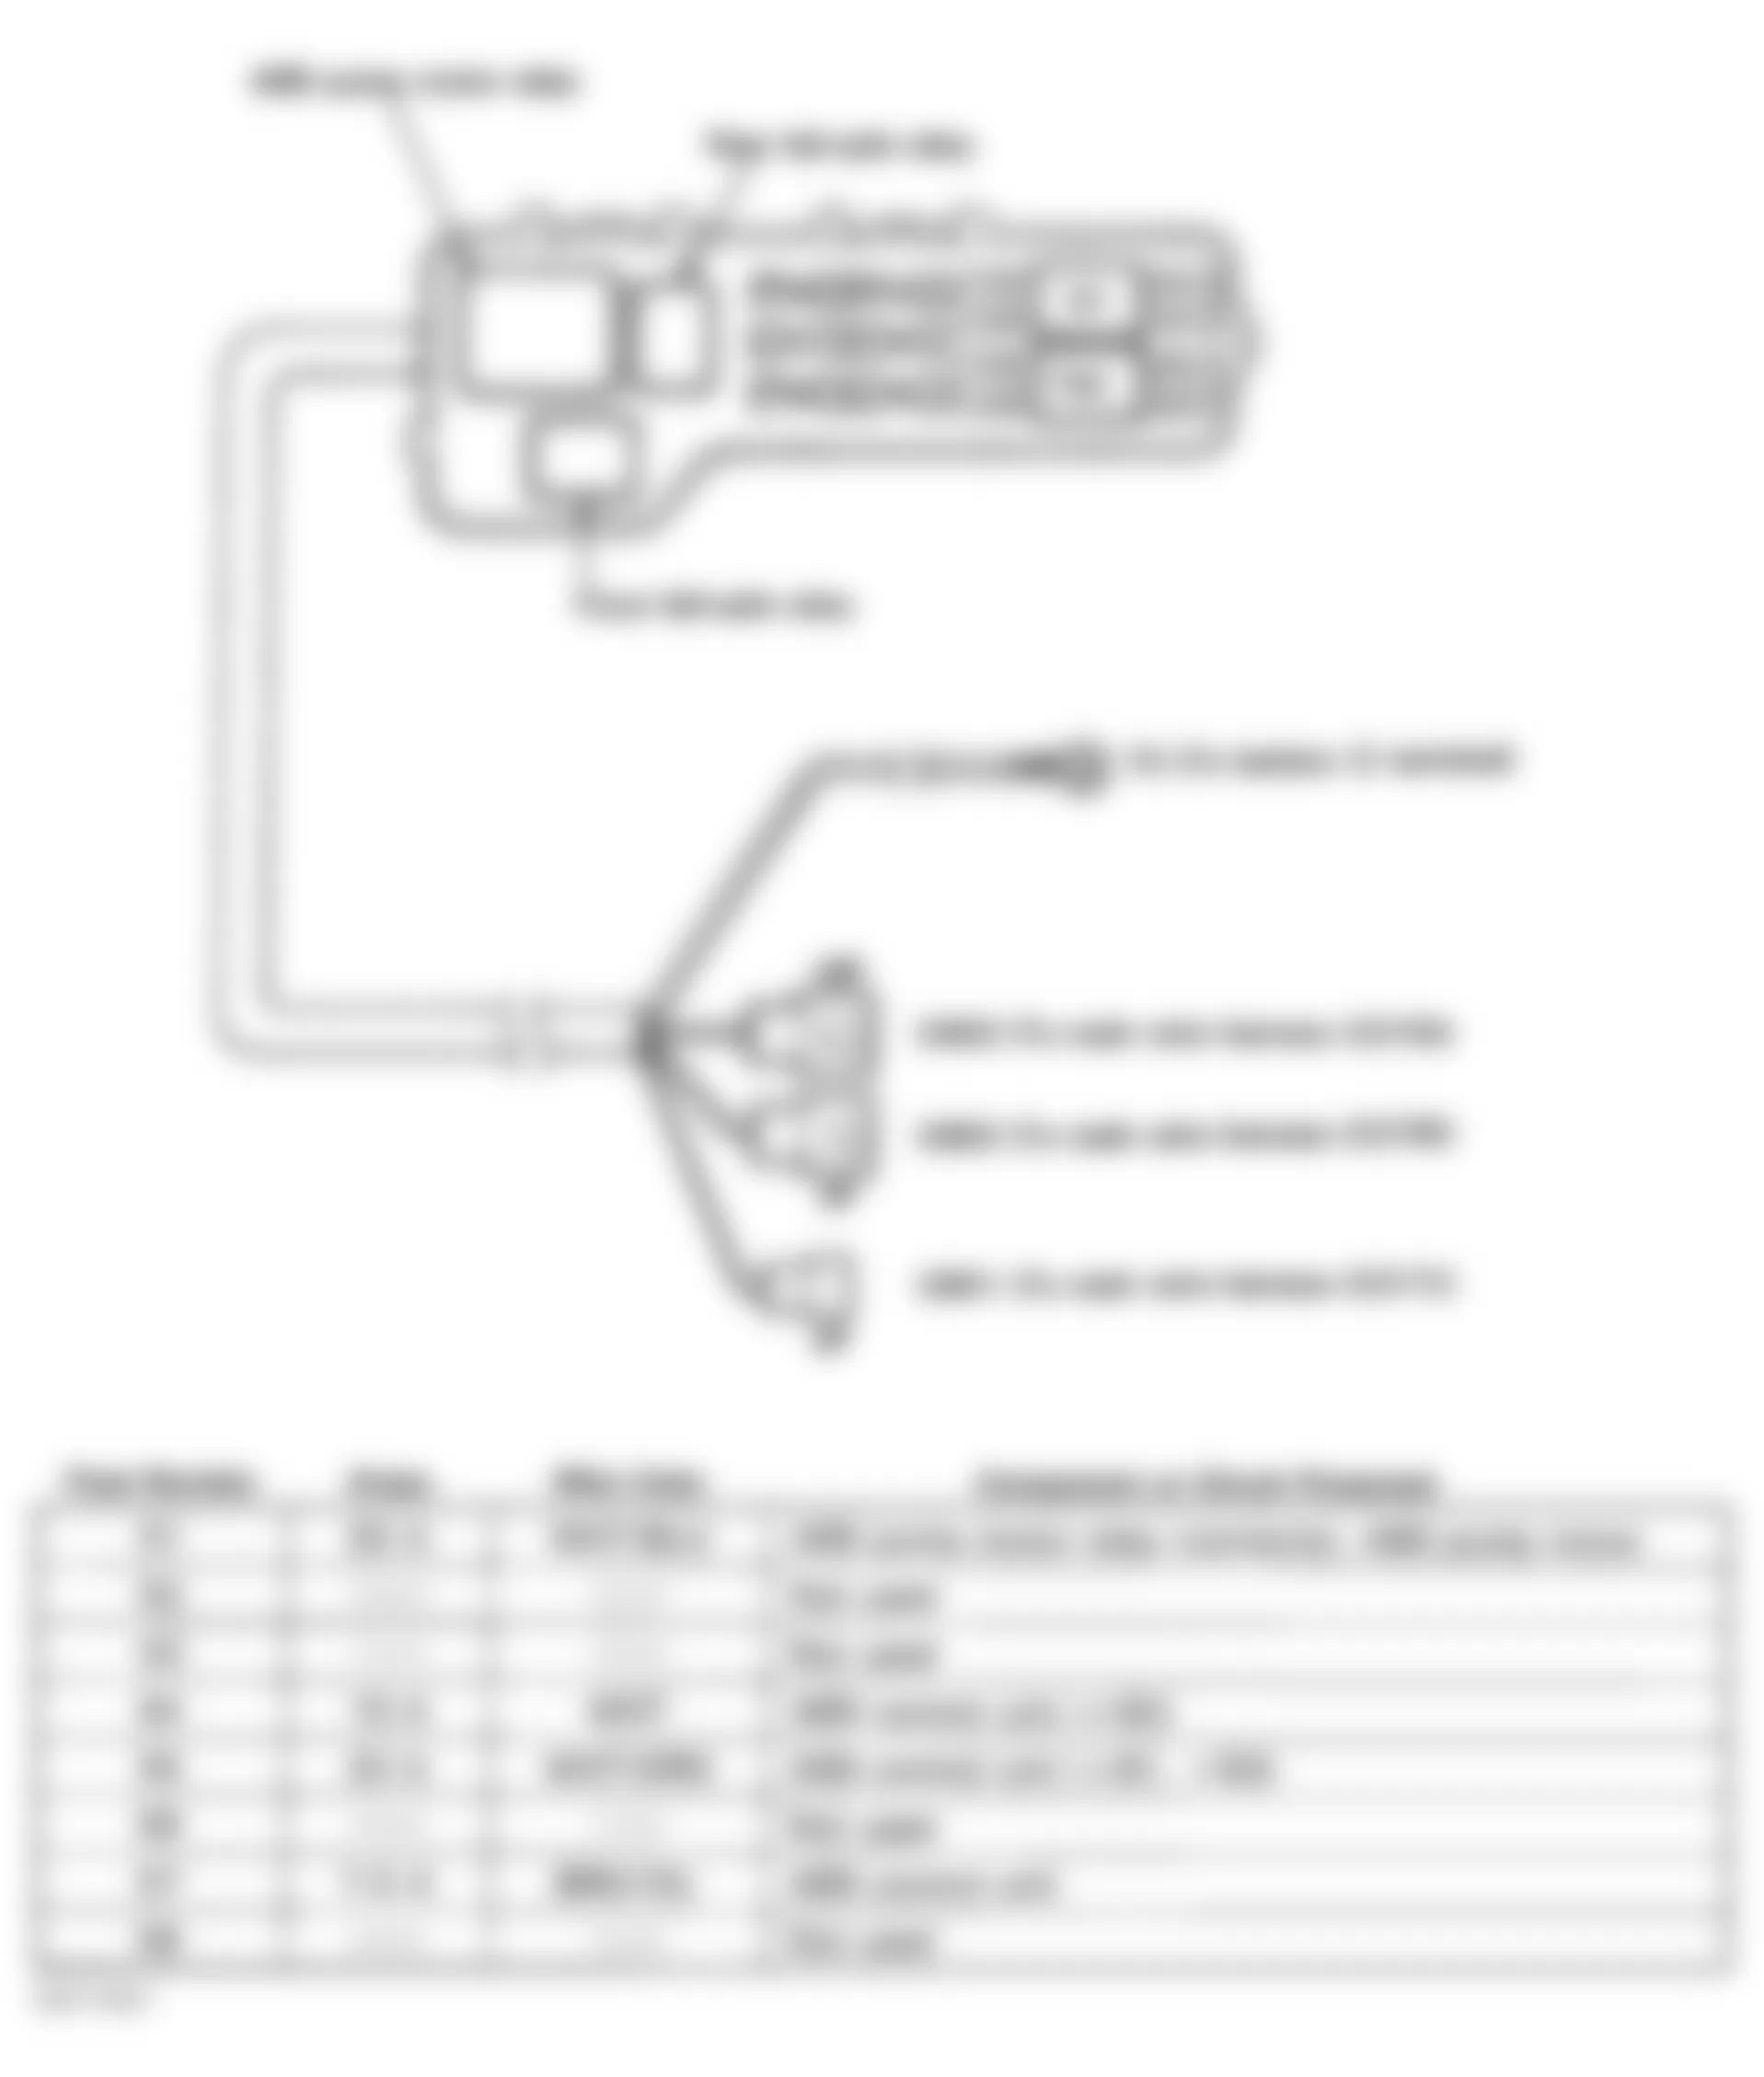 Honda Civic del Sol VTEC 1996 - Component Locations -  Identifying Under-Hood Fuse/Relay Box Components & Legend